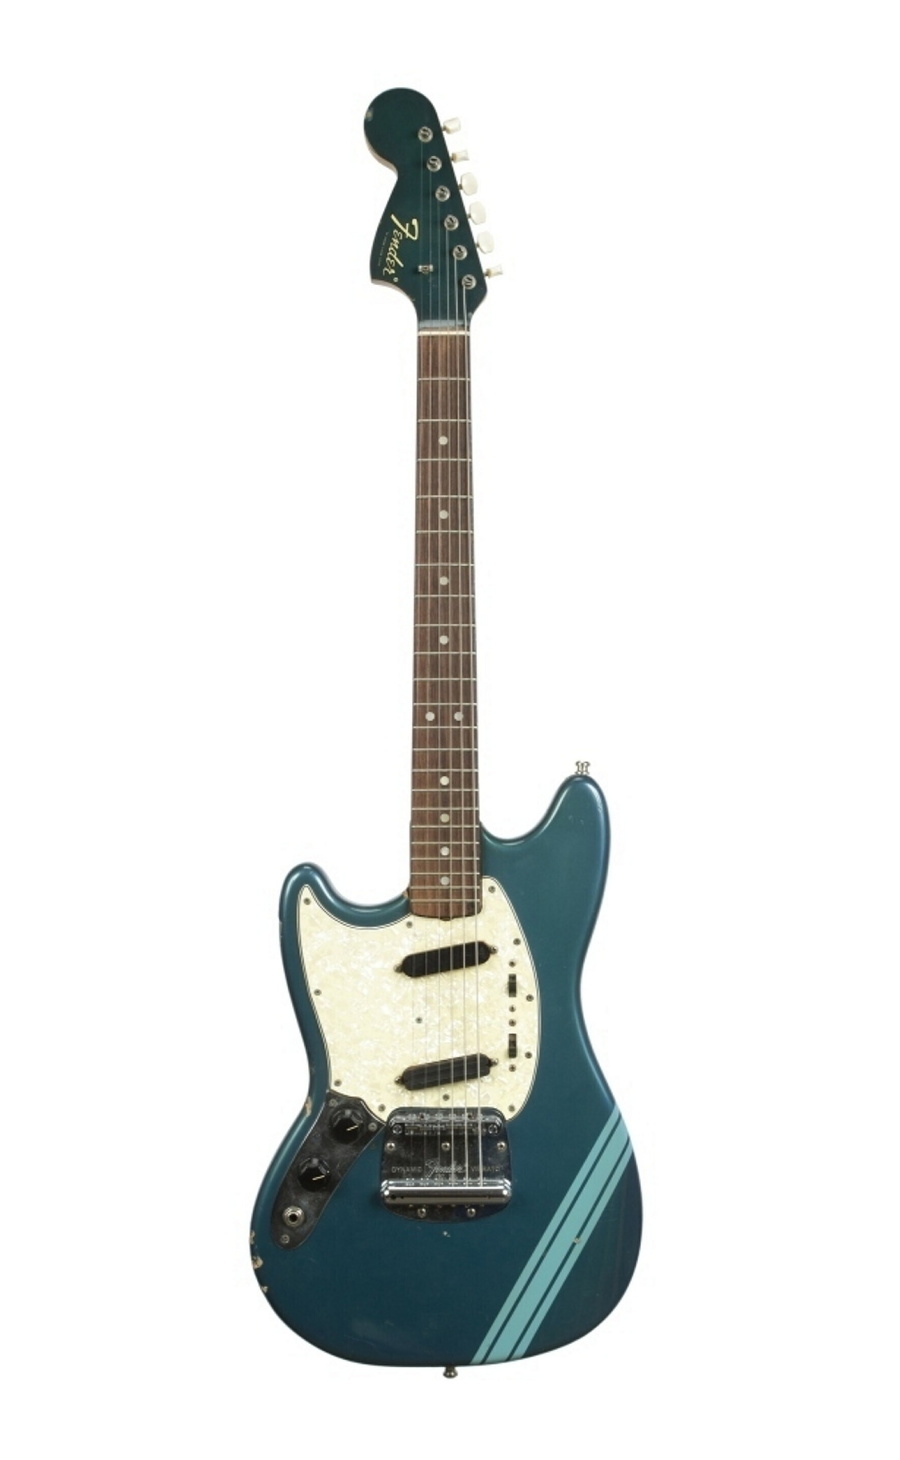 Gitara Fender Mustang z